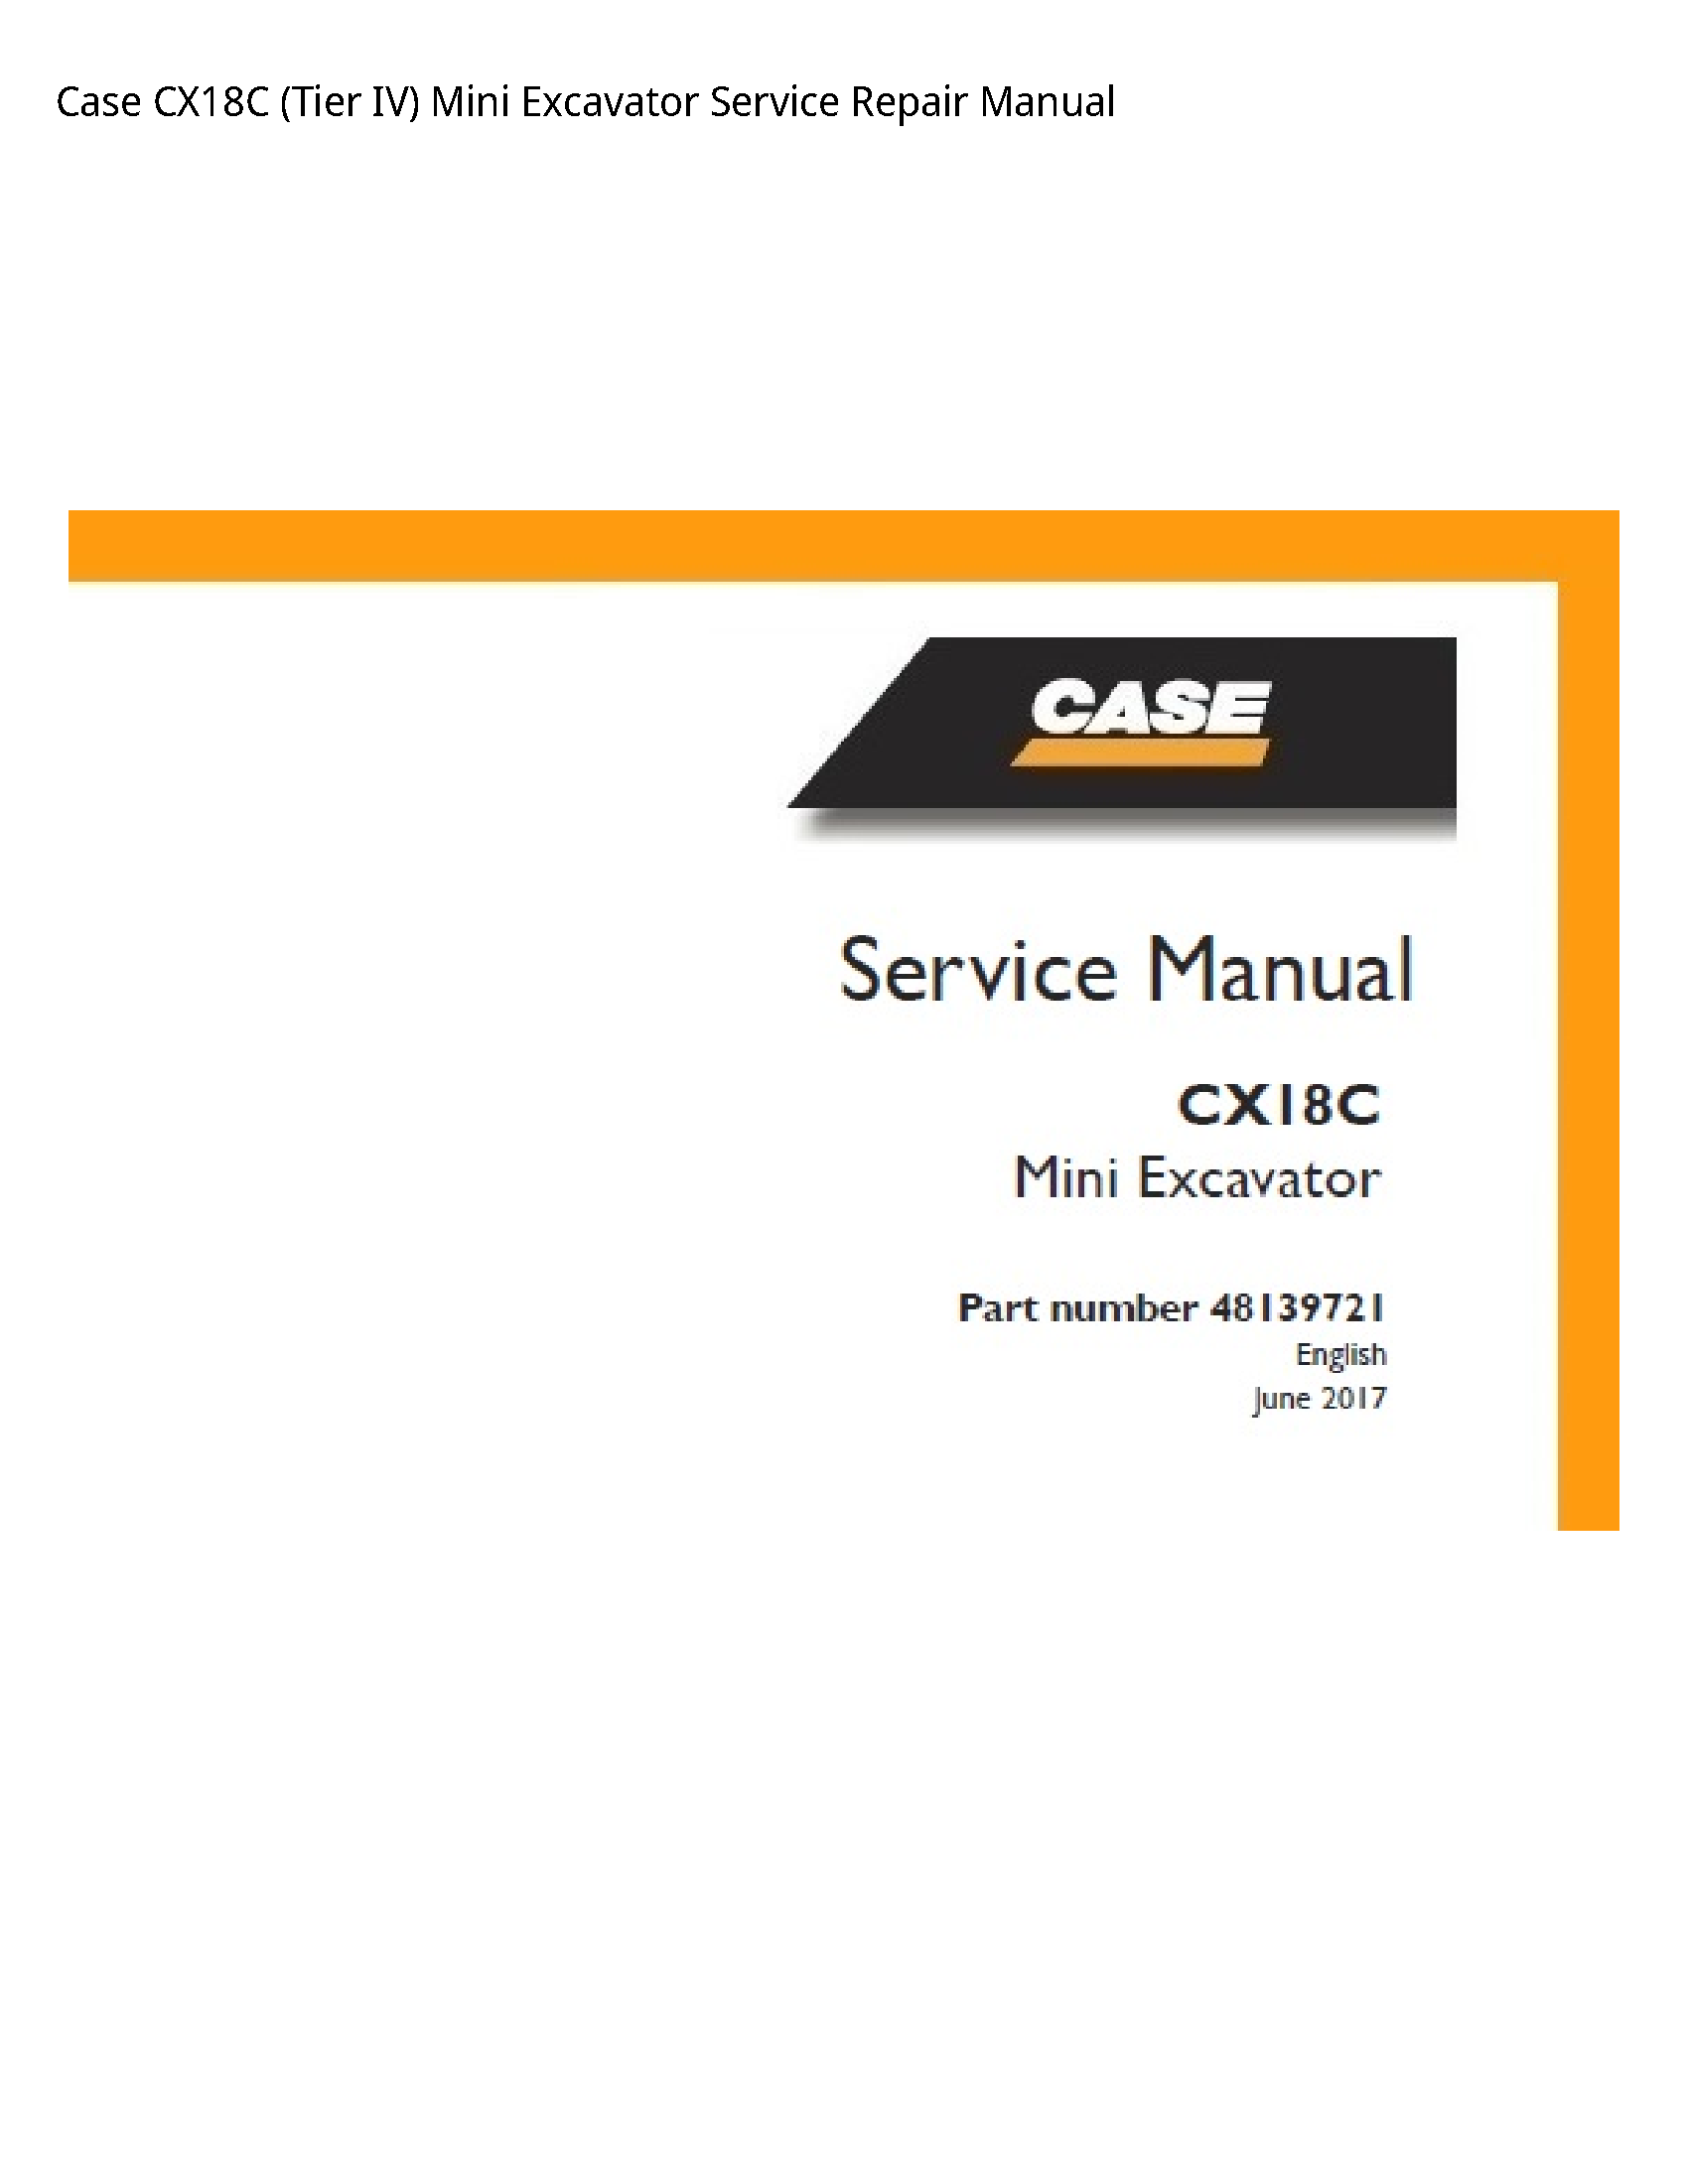 Case/Case IH CX18C (Tier IV) Mini Excavator manual